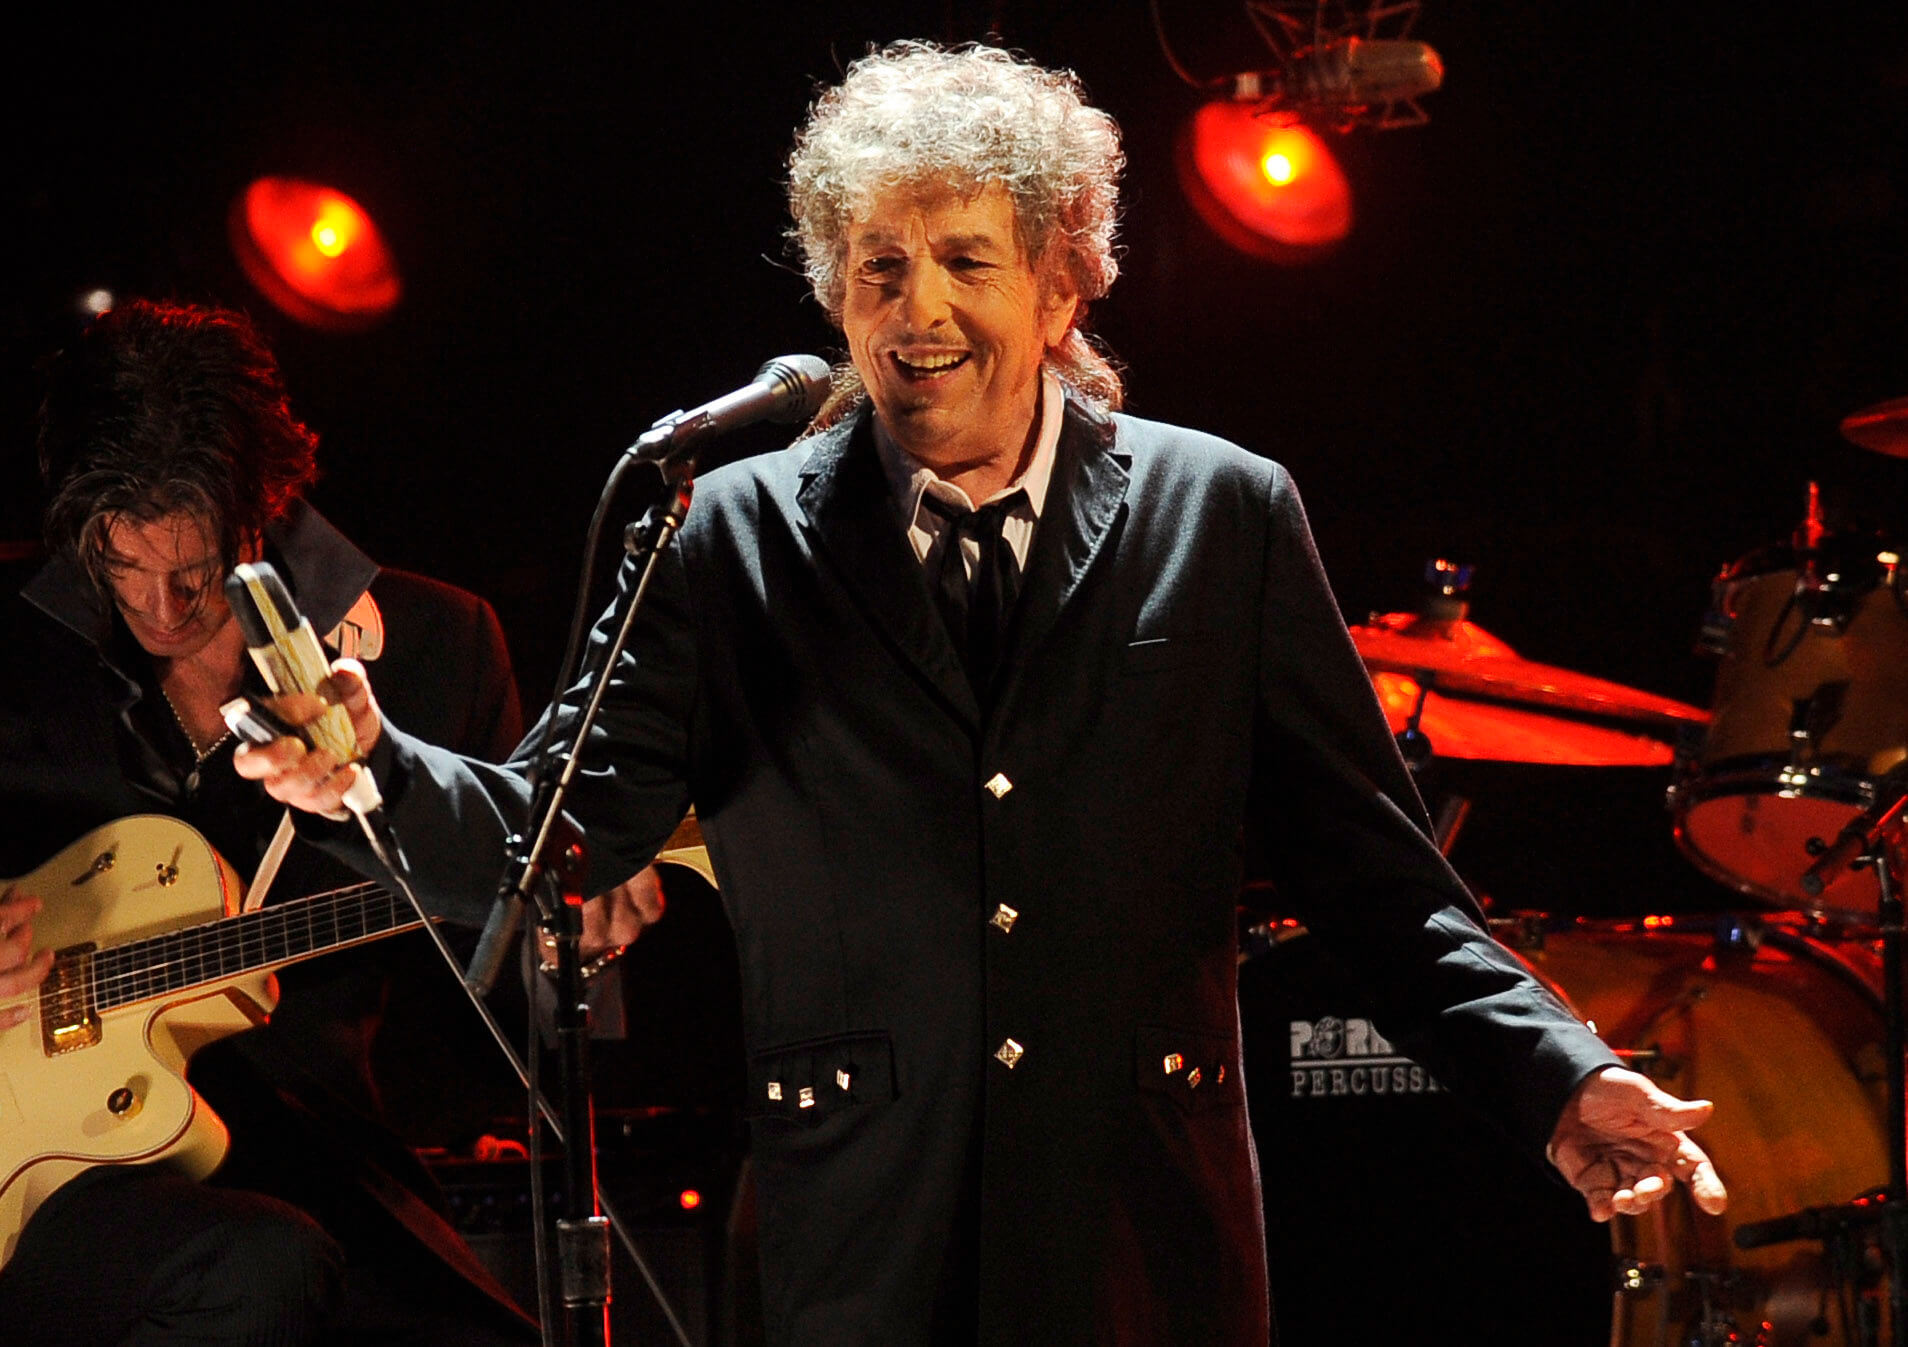 Bob Dylan, premio Nobel de Literatura 2016